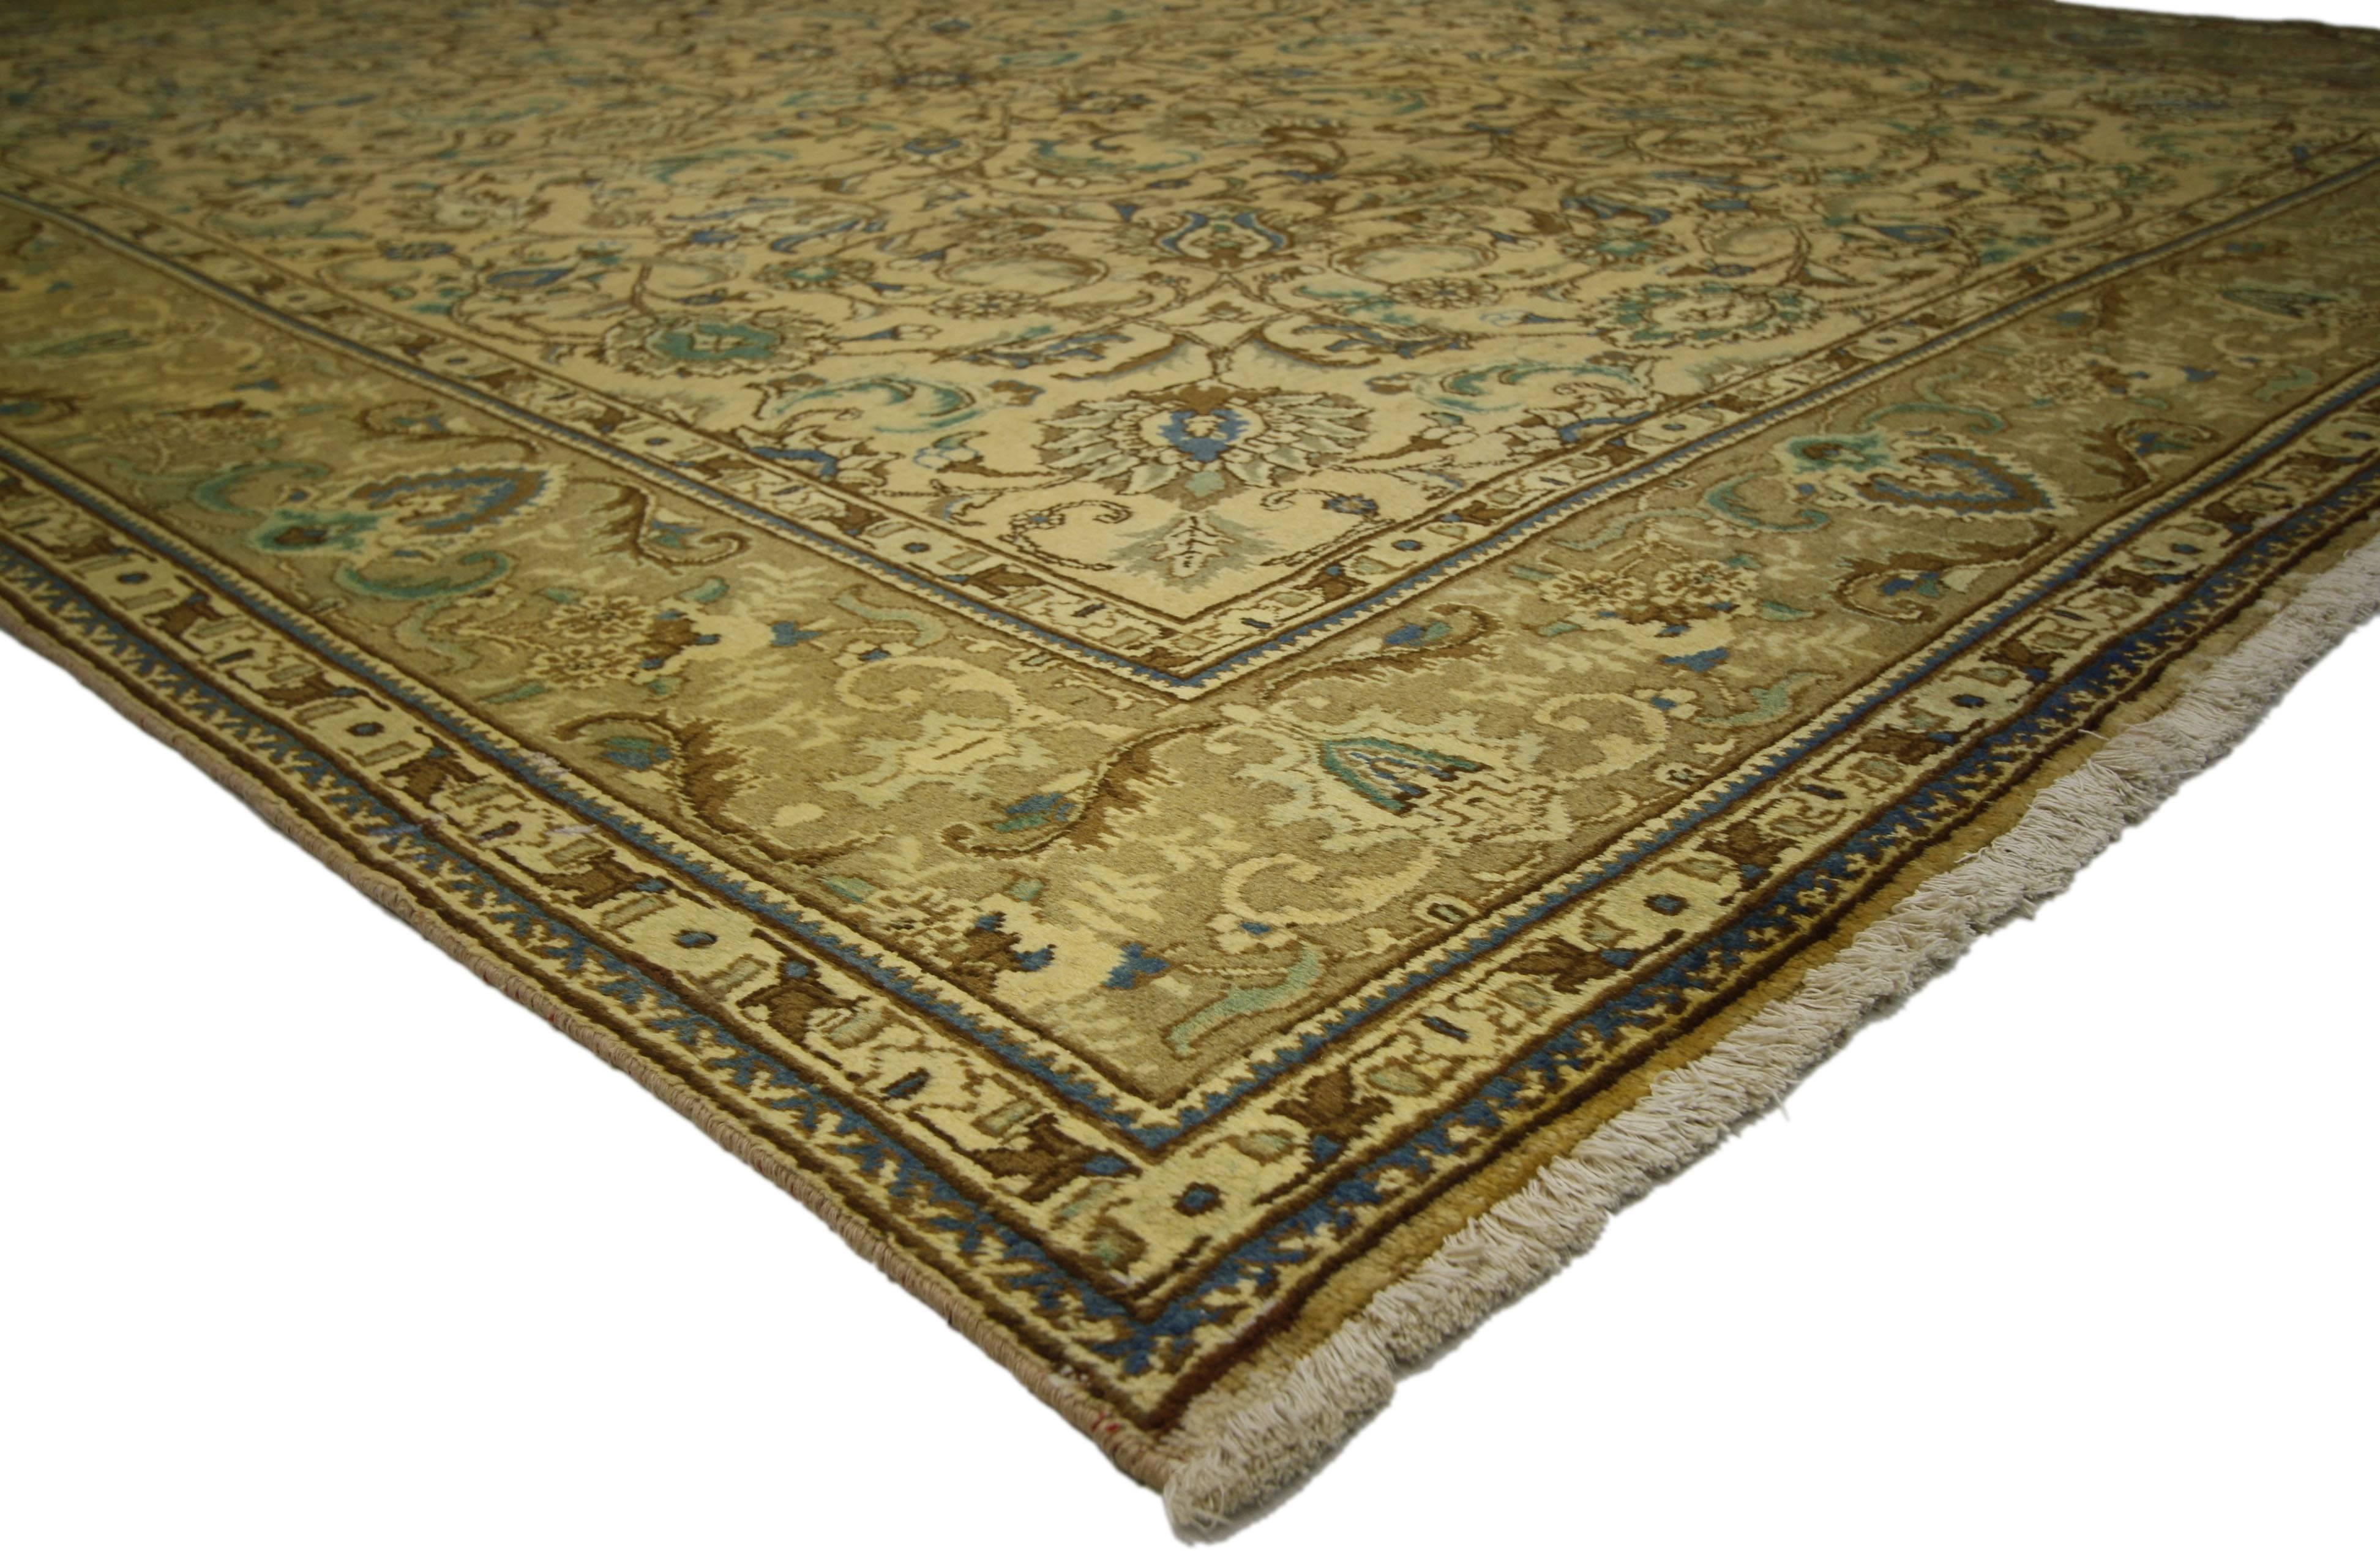 76327, tapis vintage persan Tabriz de style traditionnel. Ce tapis Persan Tabriz vintage en laine nouée à la main présente un motif all-over entouré d'une bordure classique, créant un design équilibré et intemporel. Ce tapis vintage persan Tabriz